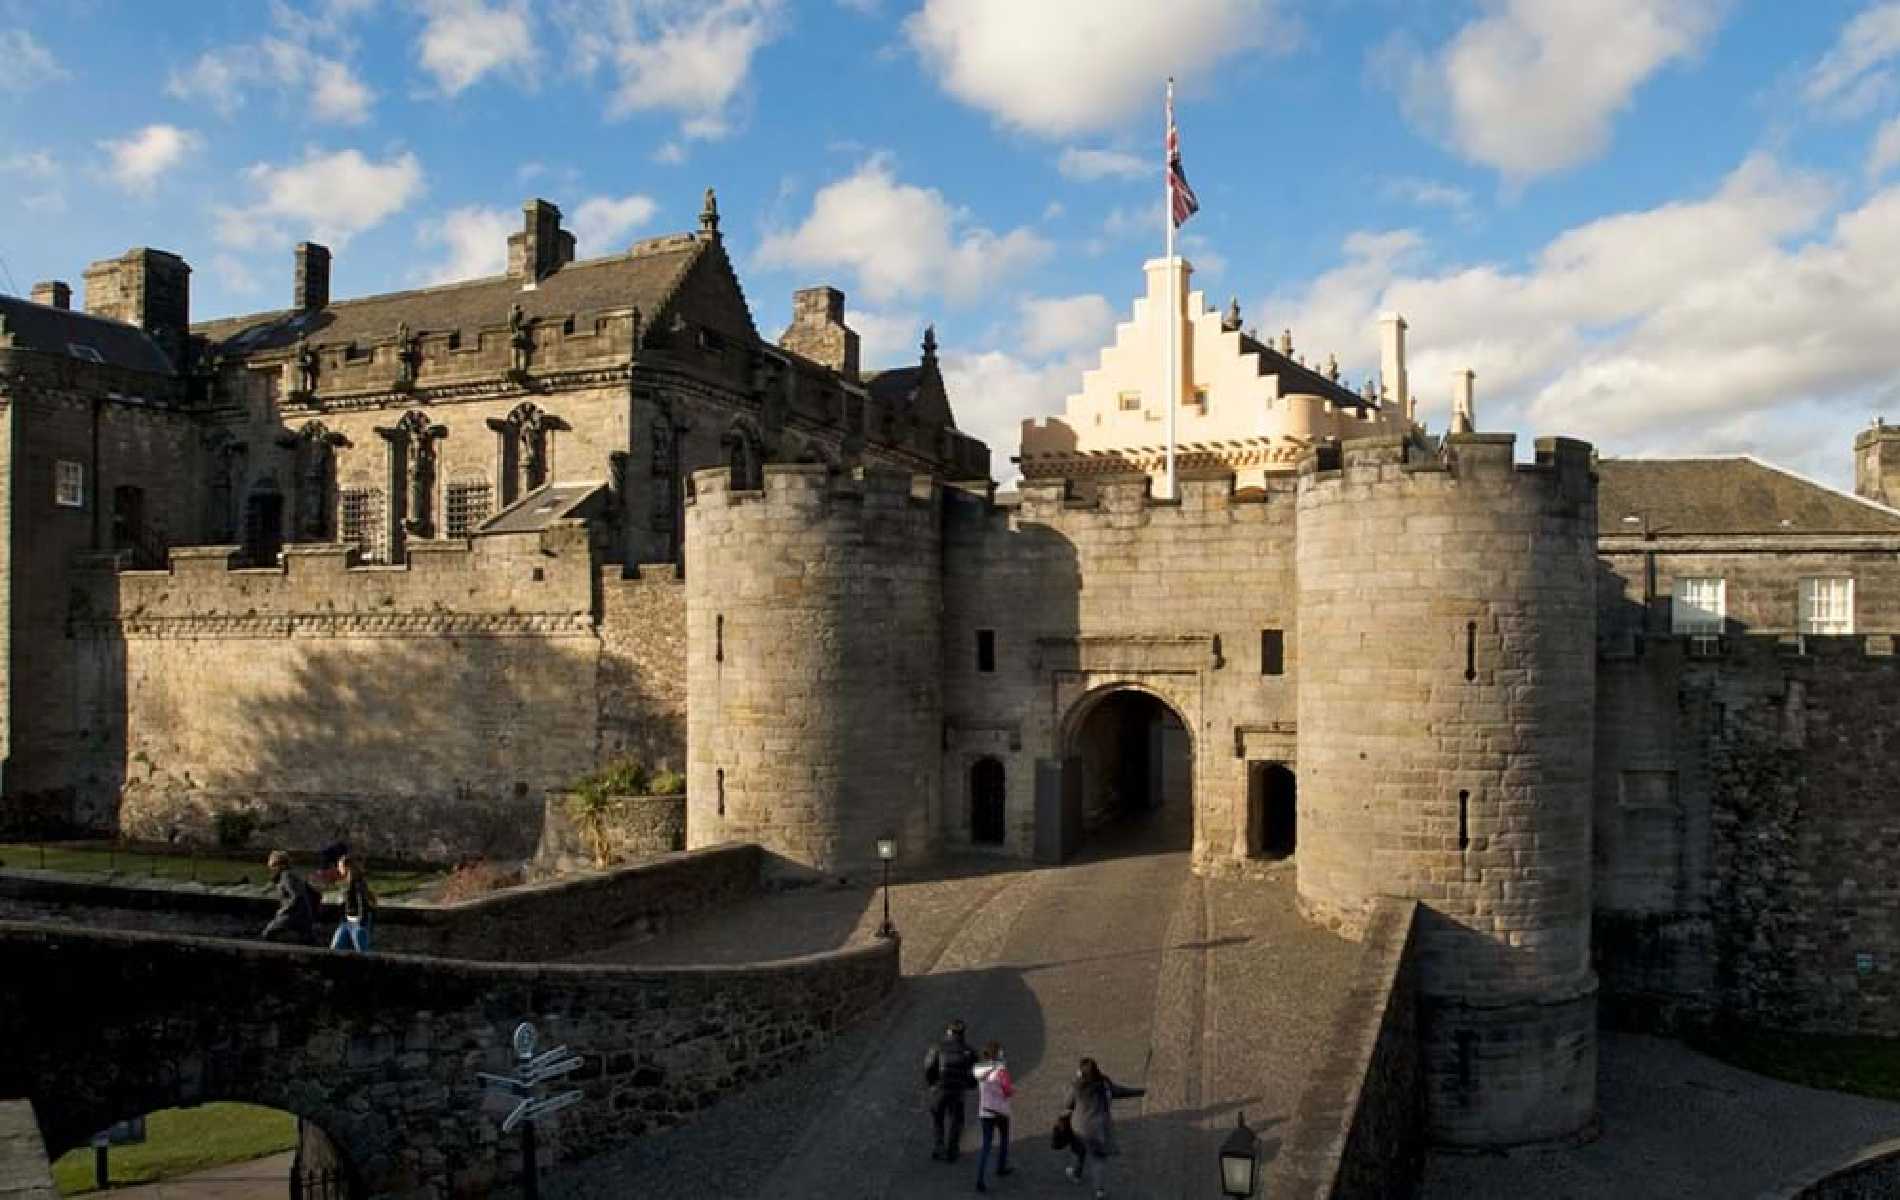 Visiting Stirling Castle